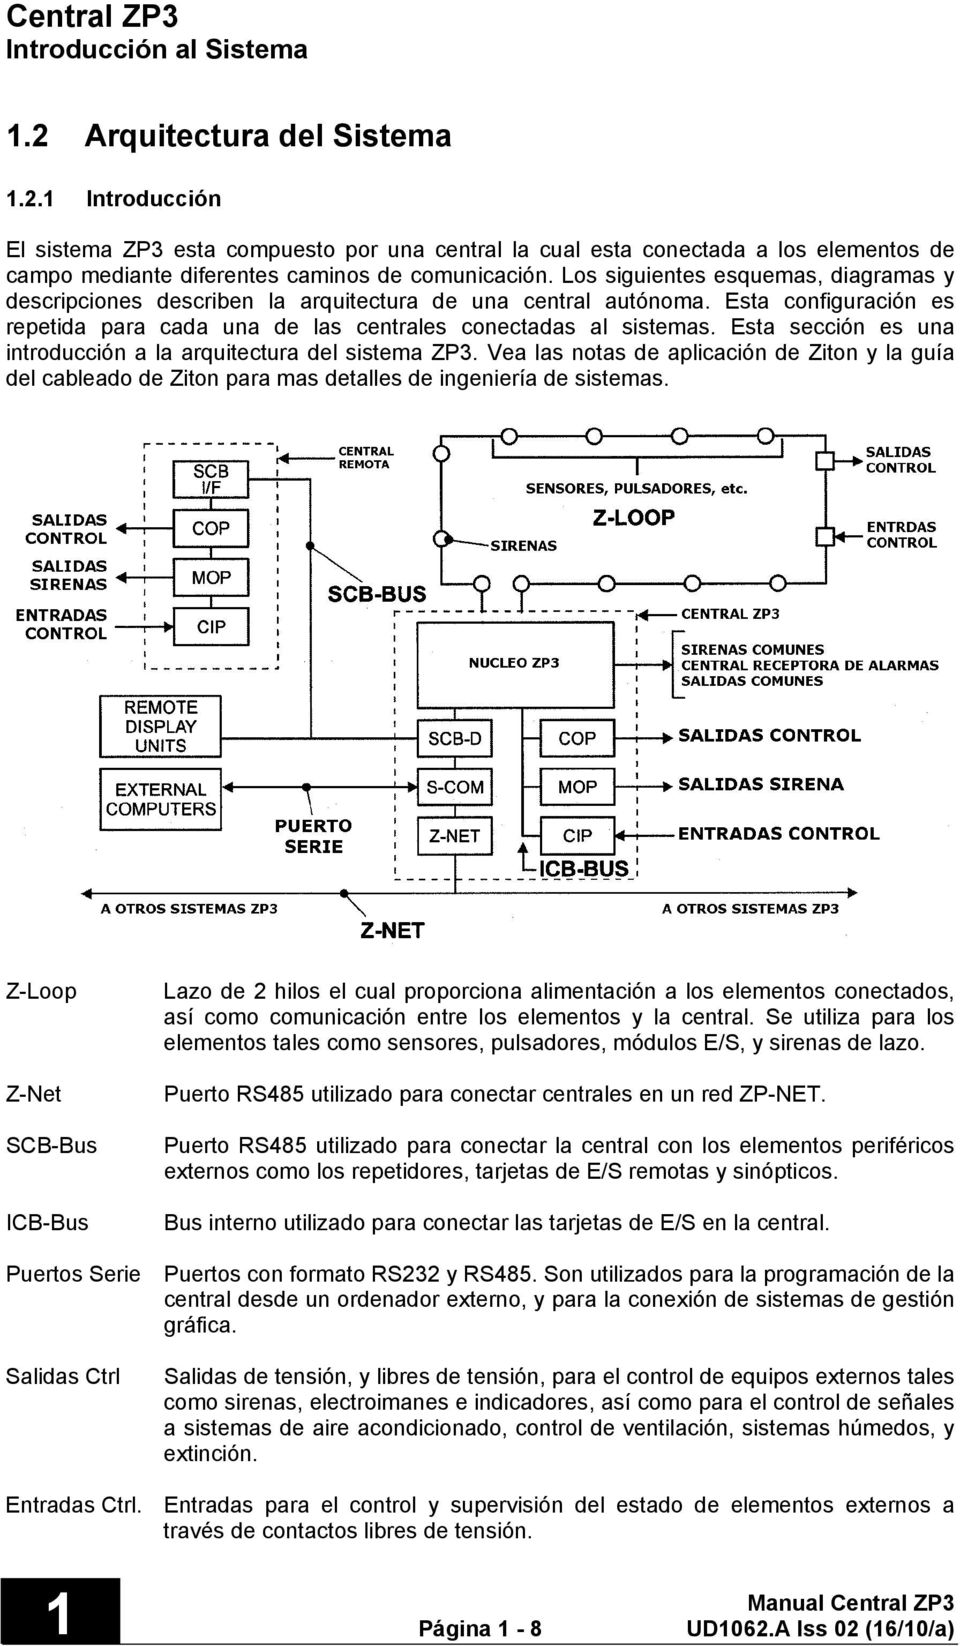 Esta sección es una introducción a la arquitectura del sistema ZP3. Vea las notas de aplicación de Ziton y la guía del cableado de Ziton para mas detalles de ingeniería de sistemas.